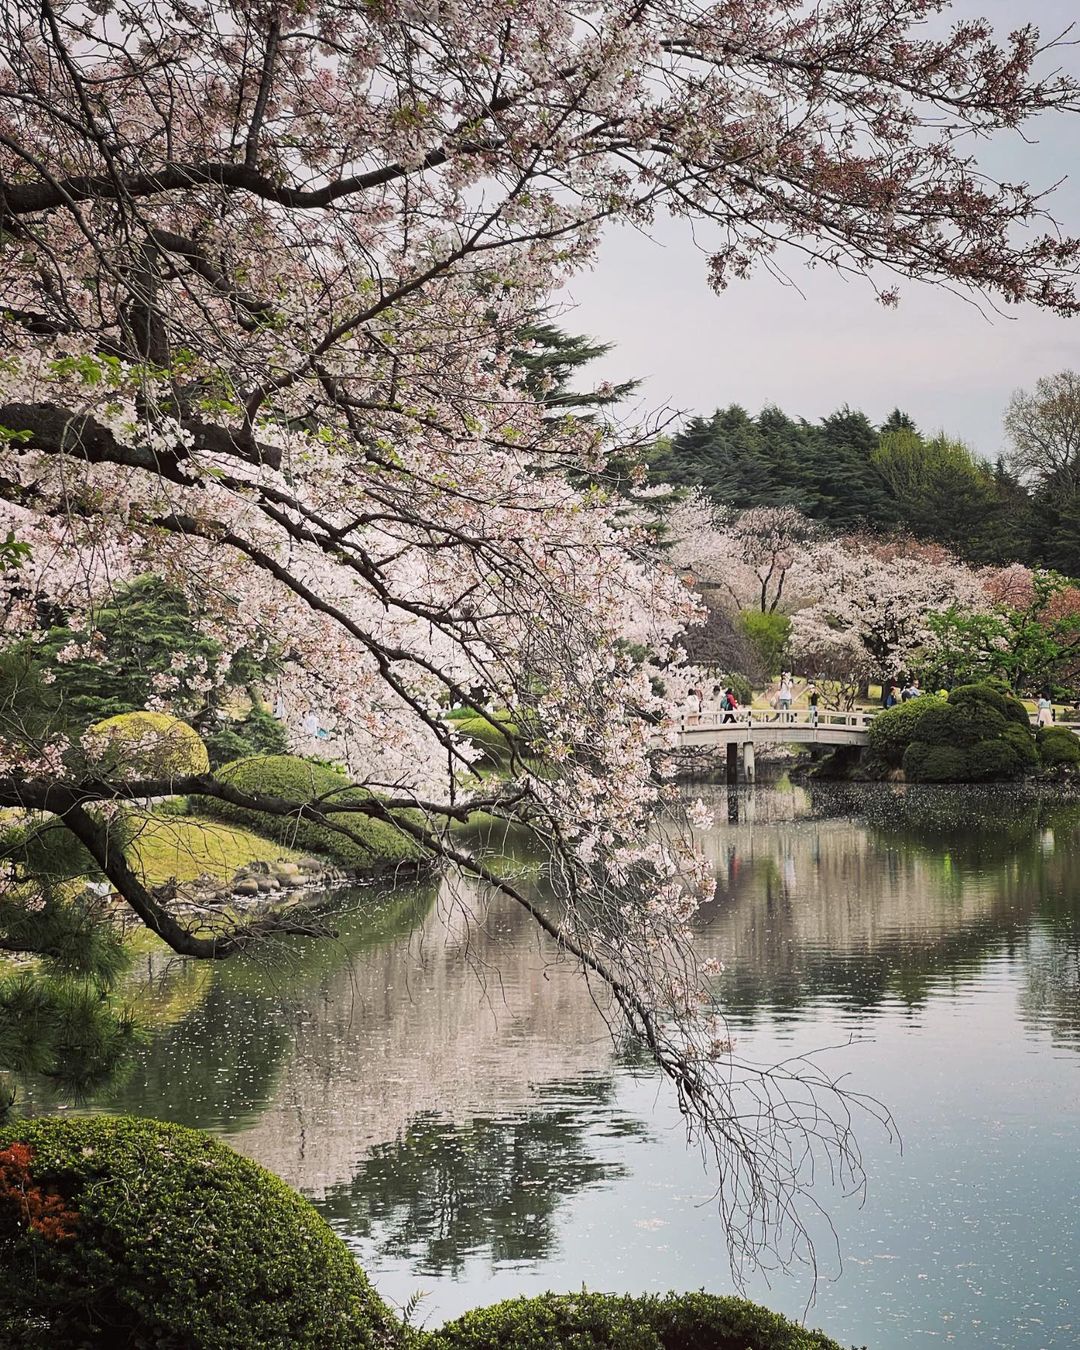 shinjuku gyoen national garden sakura cherry blossom trees